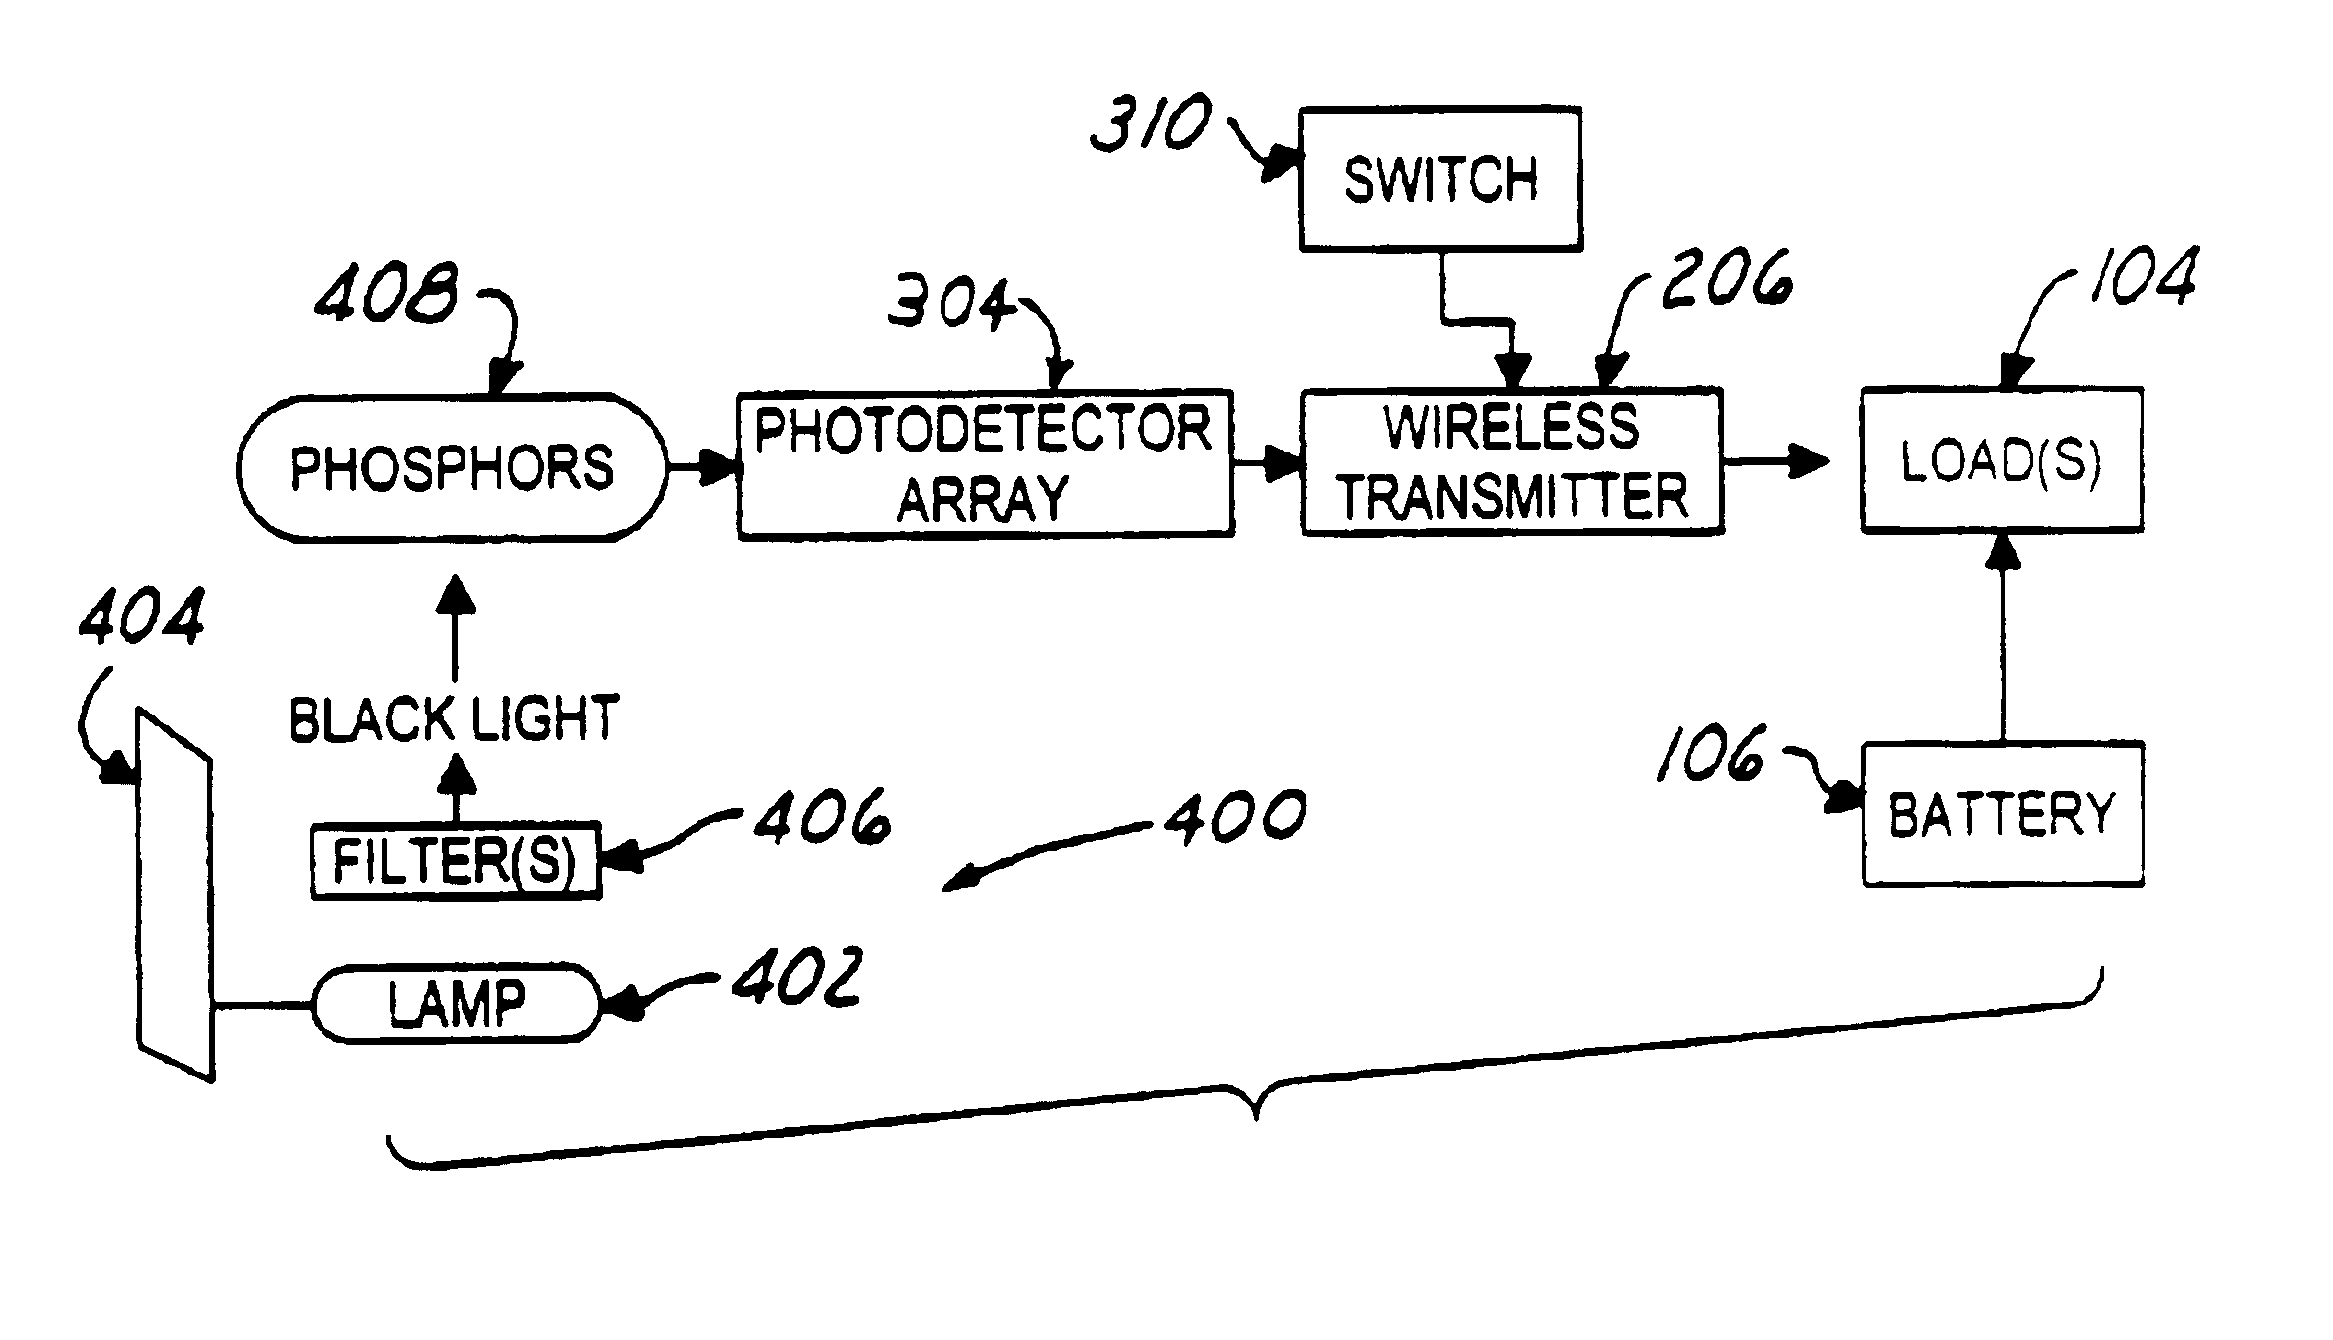 Self-powered wireless switch